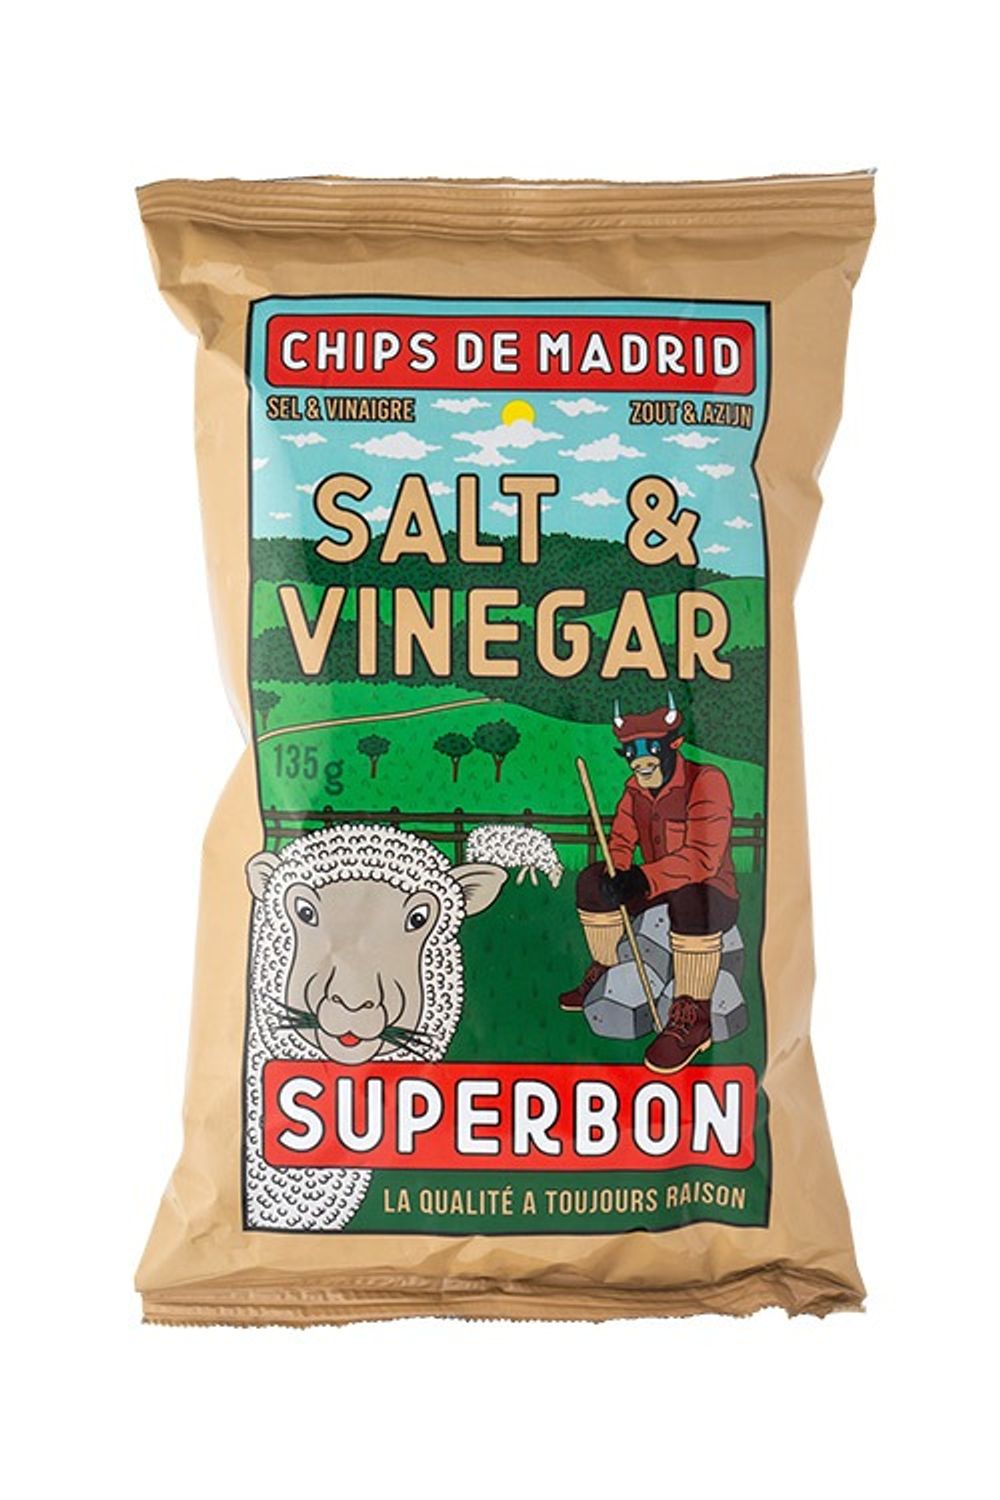 Salt & Vinegar Potato Chips